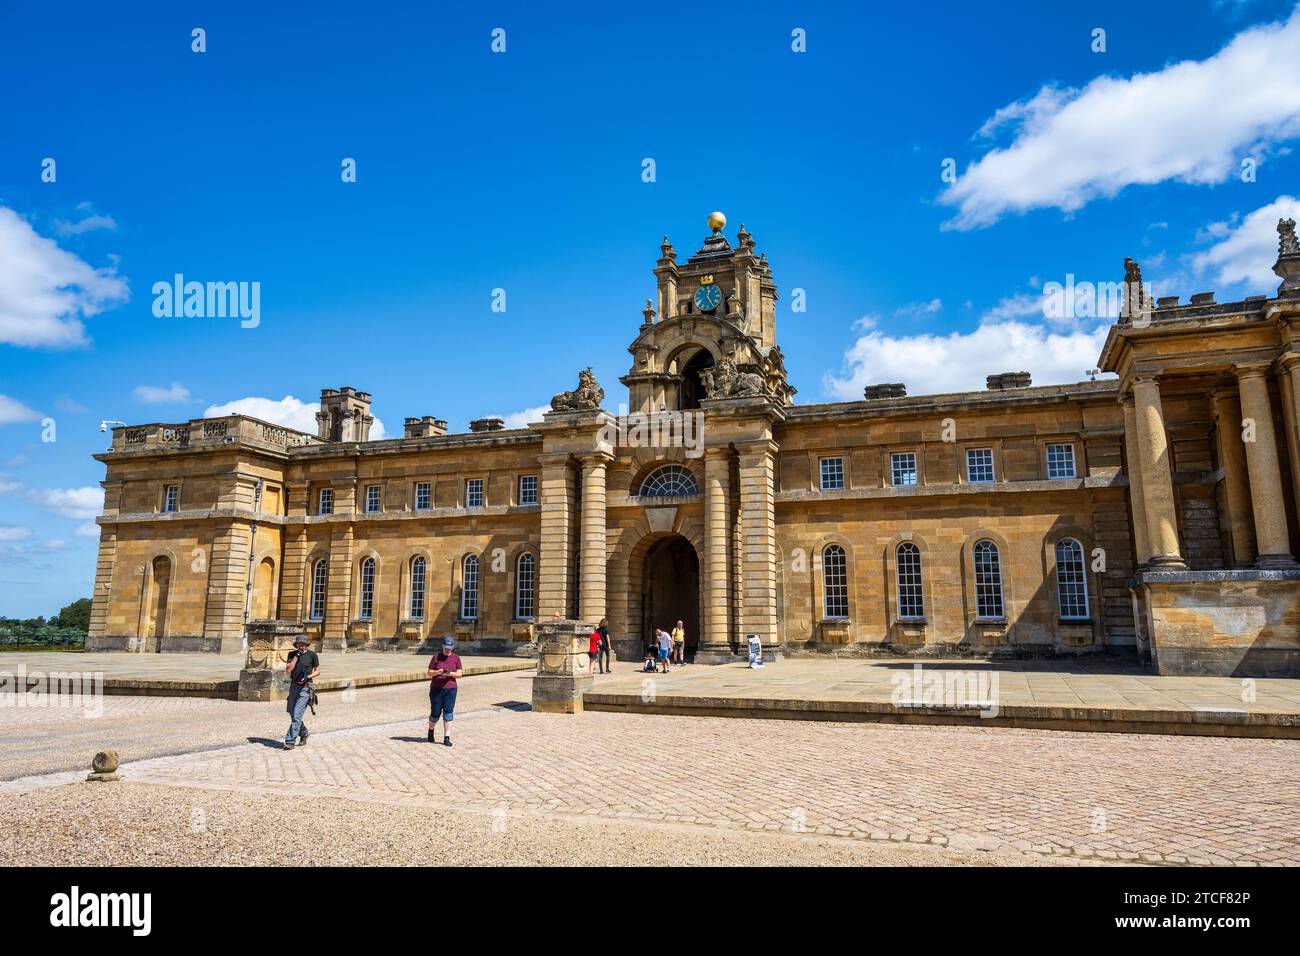 Der Uhrenturm über dem Torbogen führt vom East Courtyard zum Great Court of Blenheim Palace in Woodstock, Oxfordshire, England, Großbritannien Stockfoto